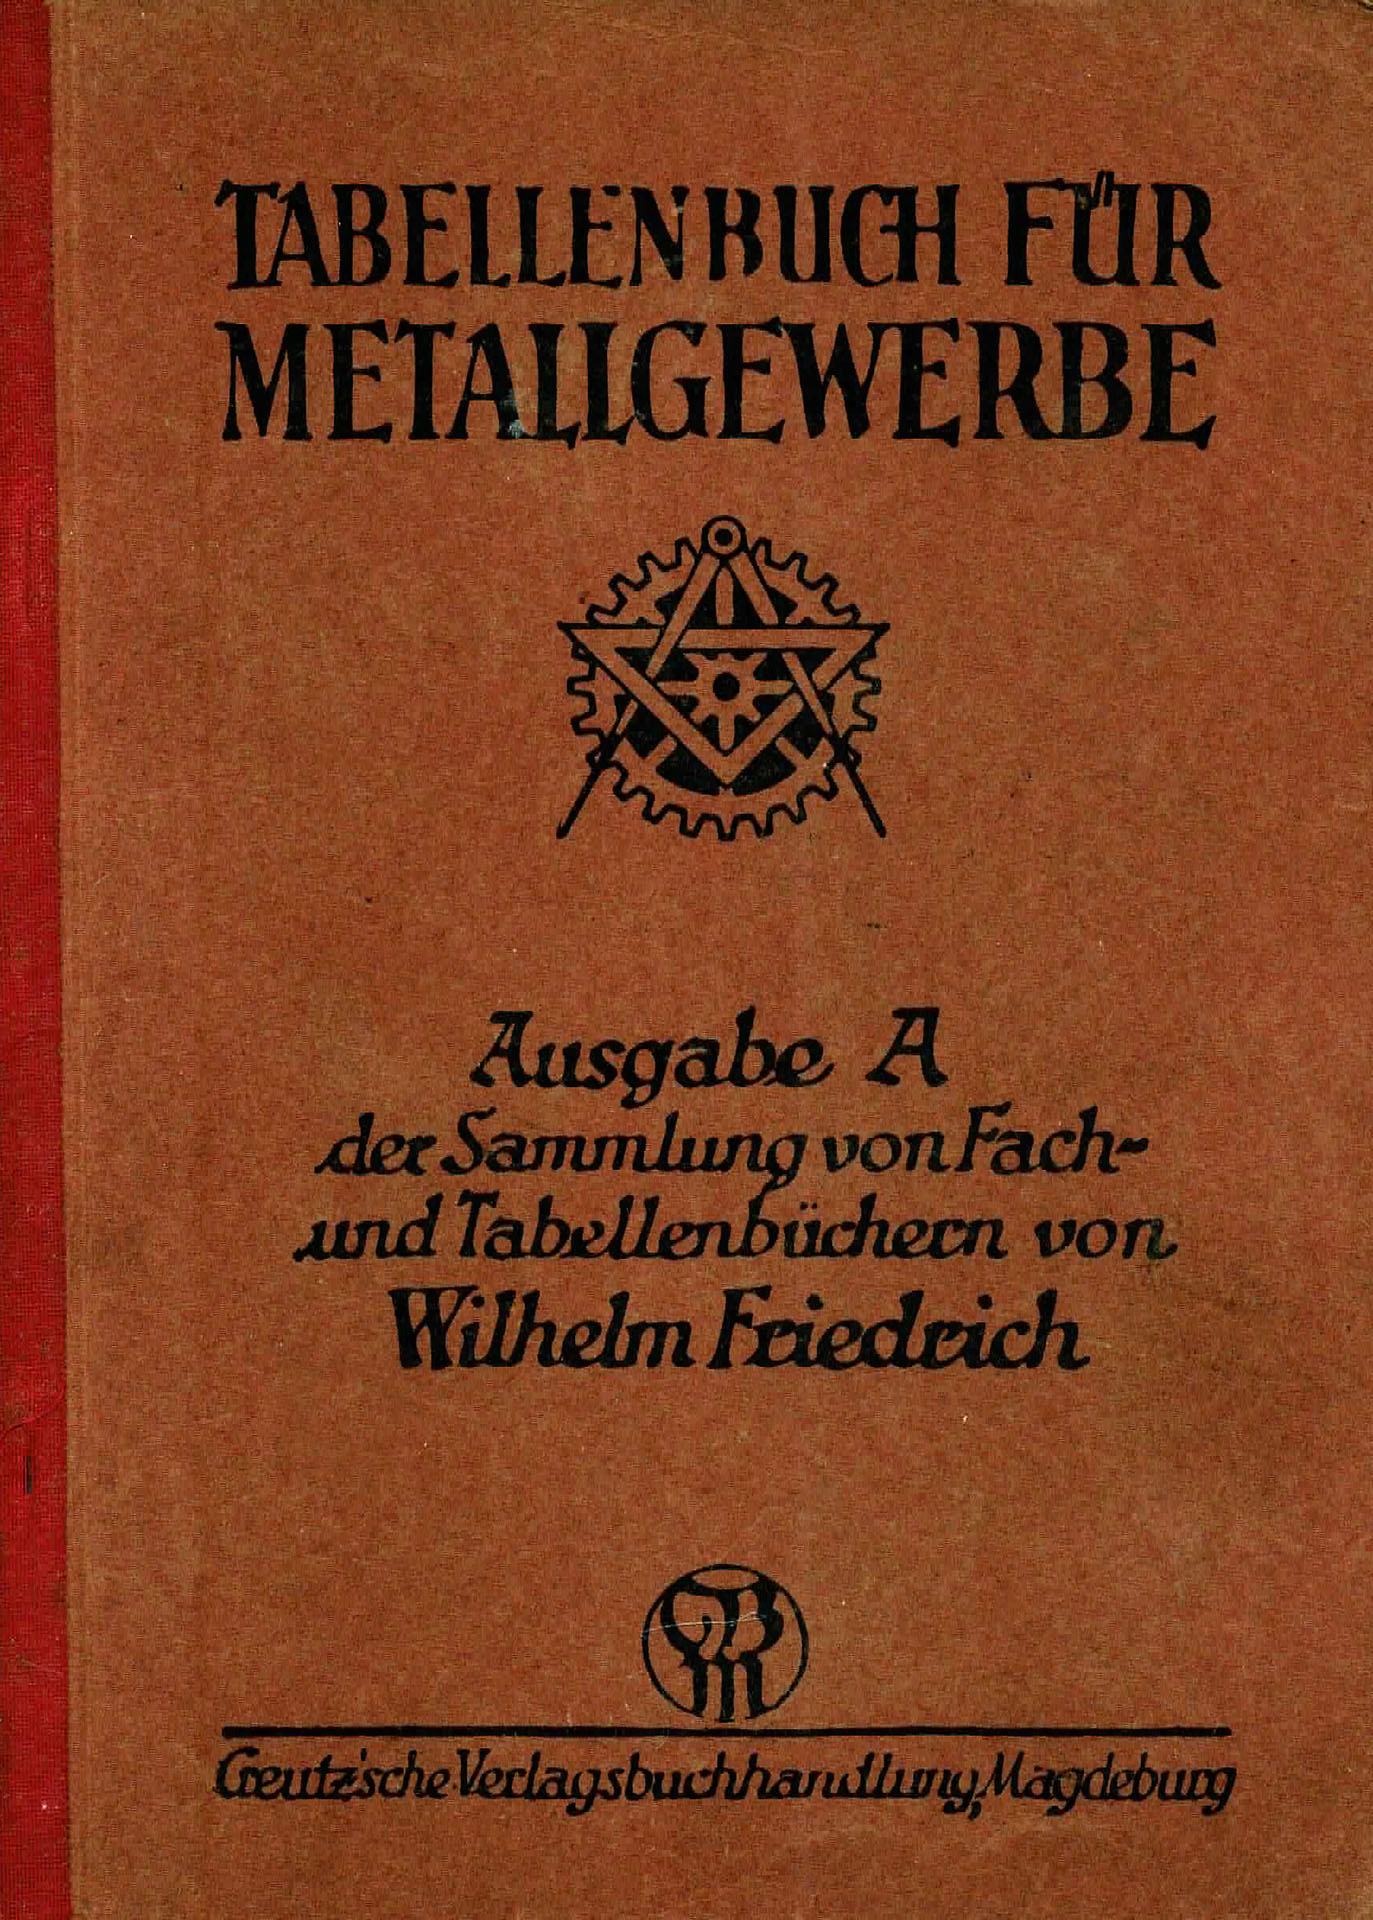 Tabellenbuch für Metallgewerbe - Friedrich, Wilhelm